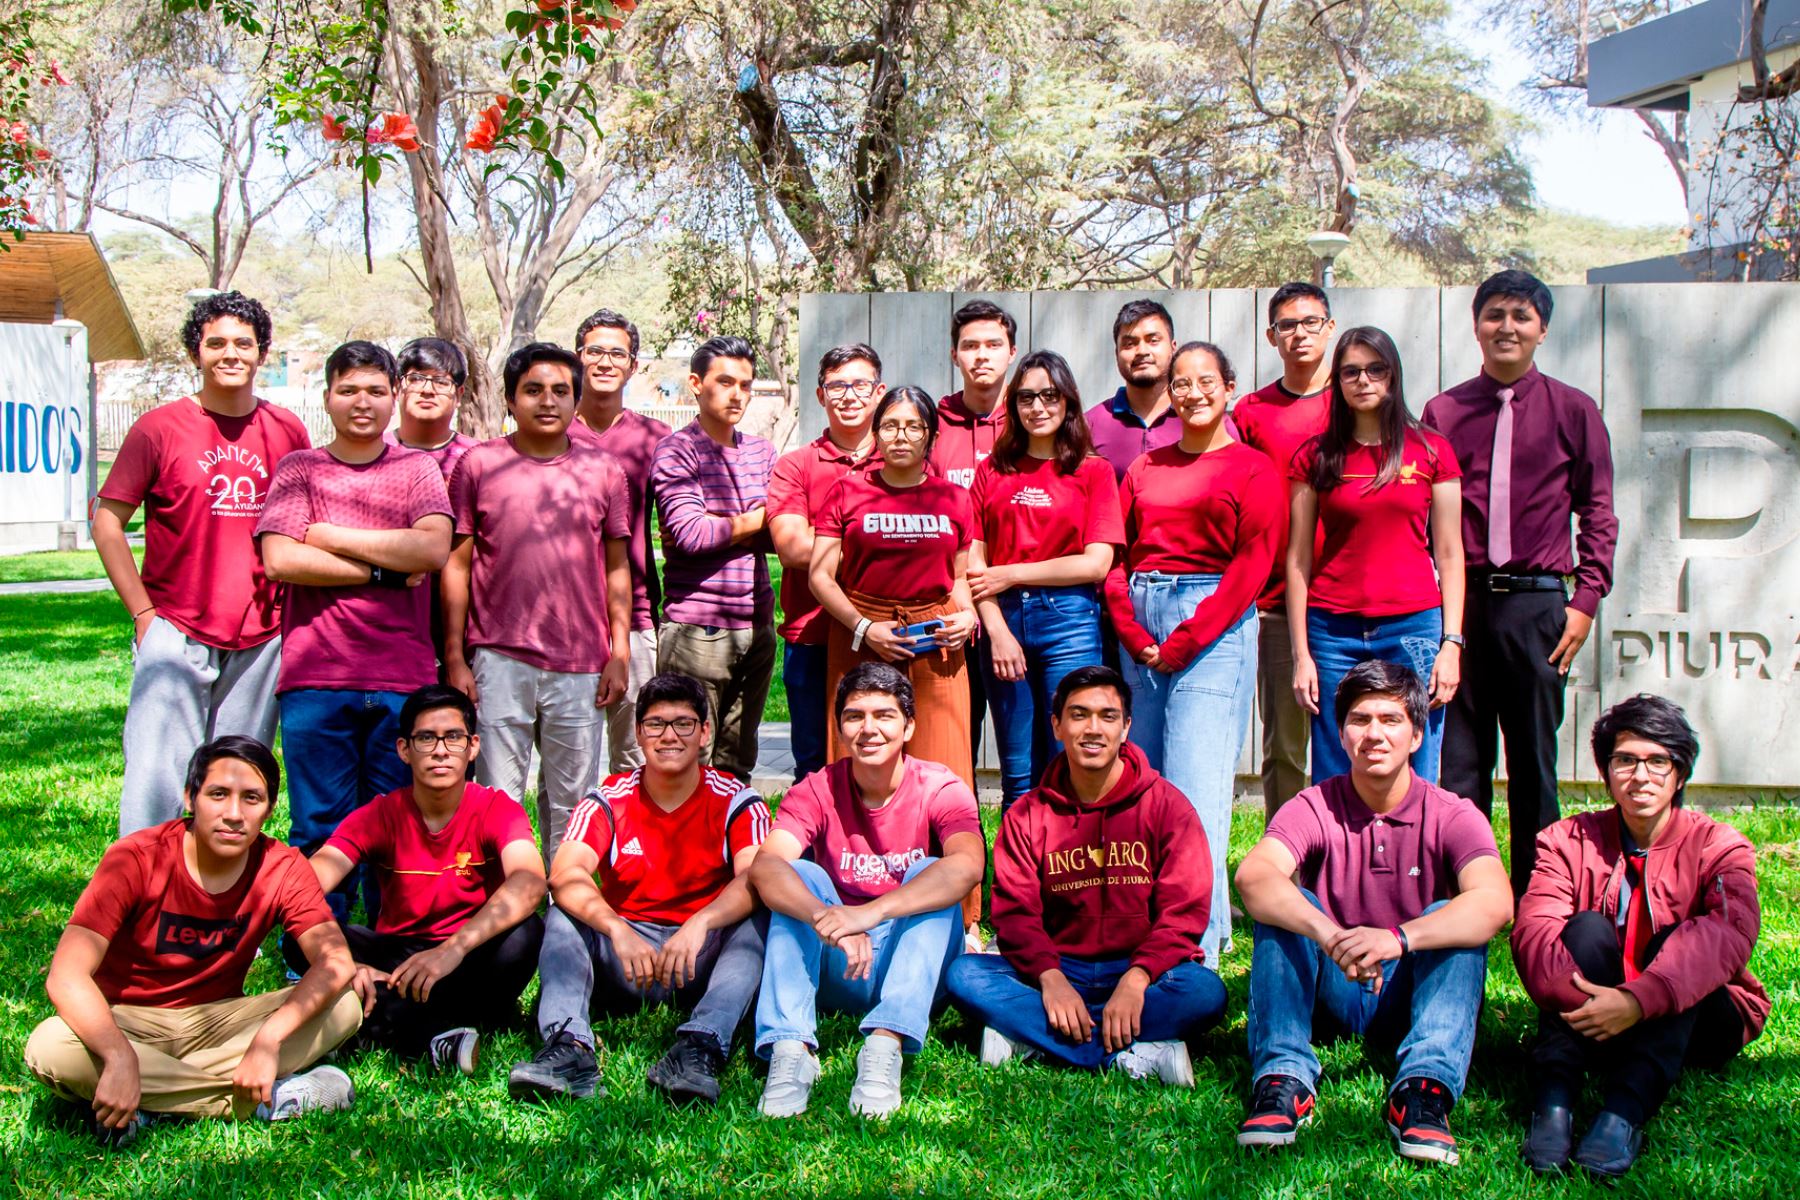 El grupo Ares, de la Universidad de Piura, es uno de los equipos peruanos seleccionados para participar en el Human Exploration Rover Challenge 2023, que busca premiar al mejor diseño de vehículo para la exploración en Marte. Foto: UDEP